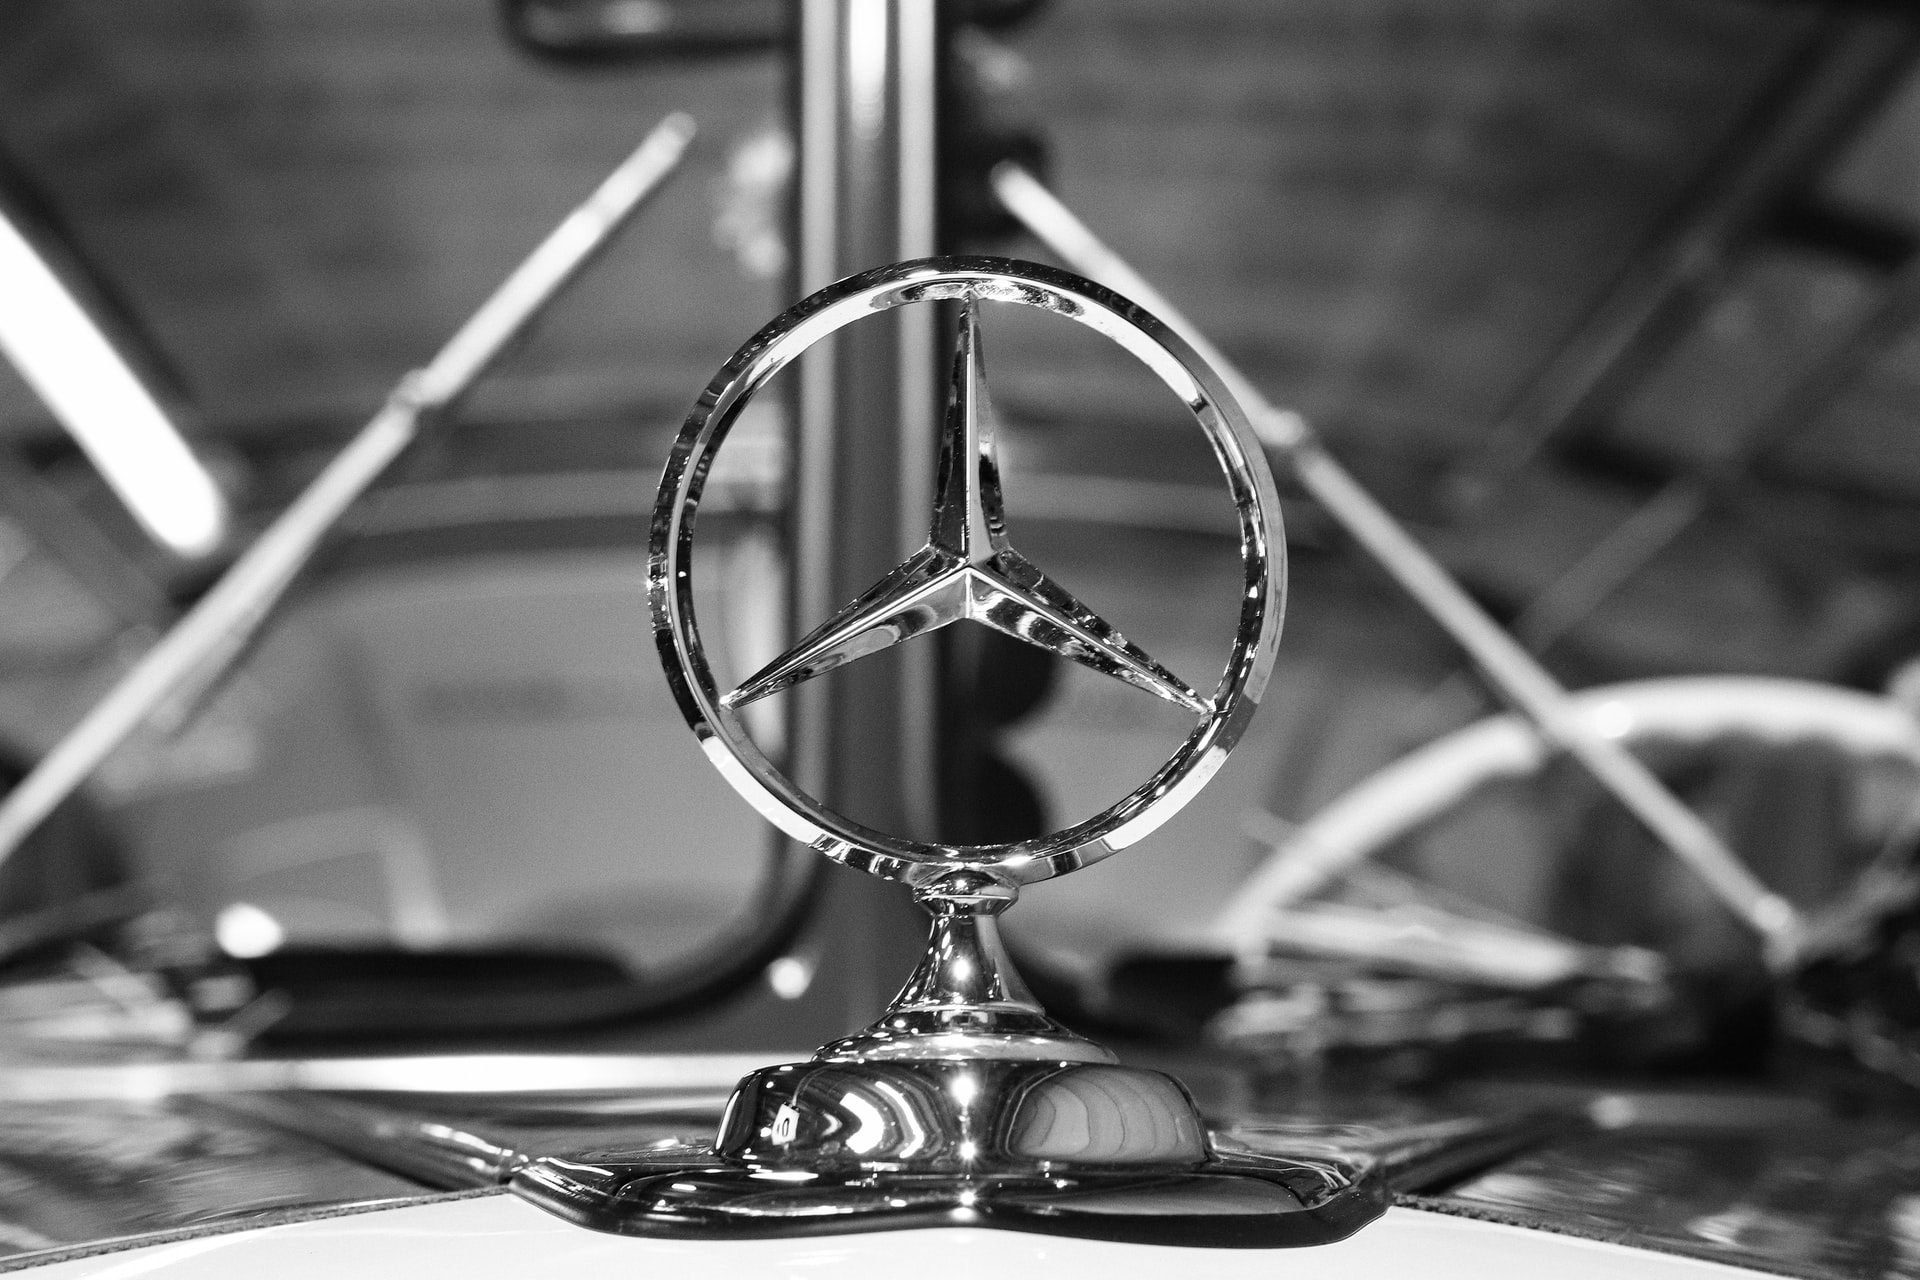 OM 654 Abgasskandal bei Daimler: Auch Mercedes-Motor OM 654 betroffen -  Das können Sie tun